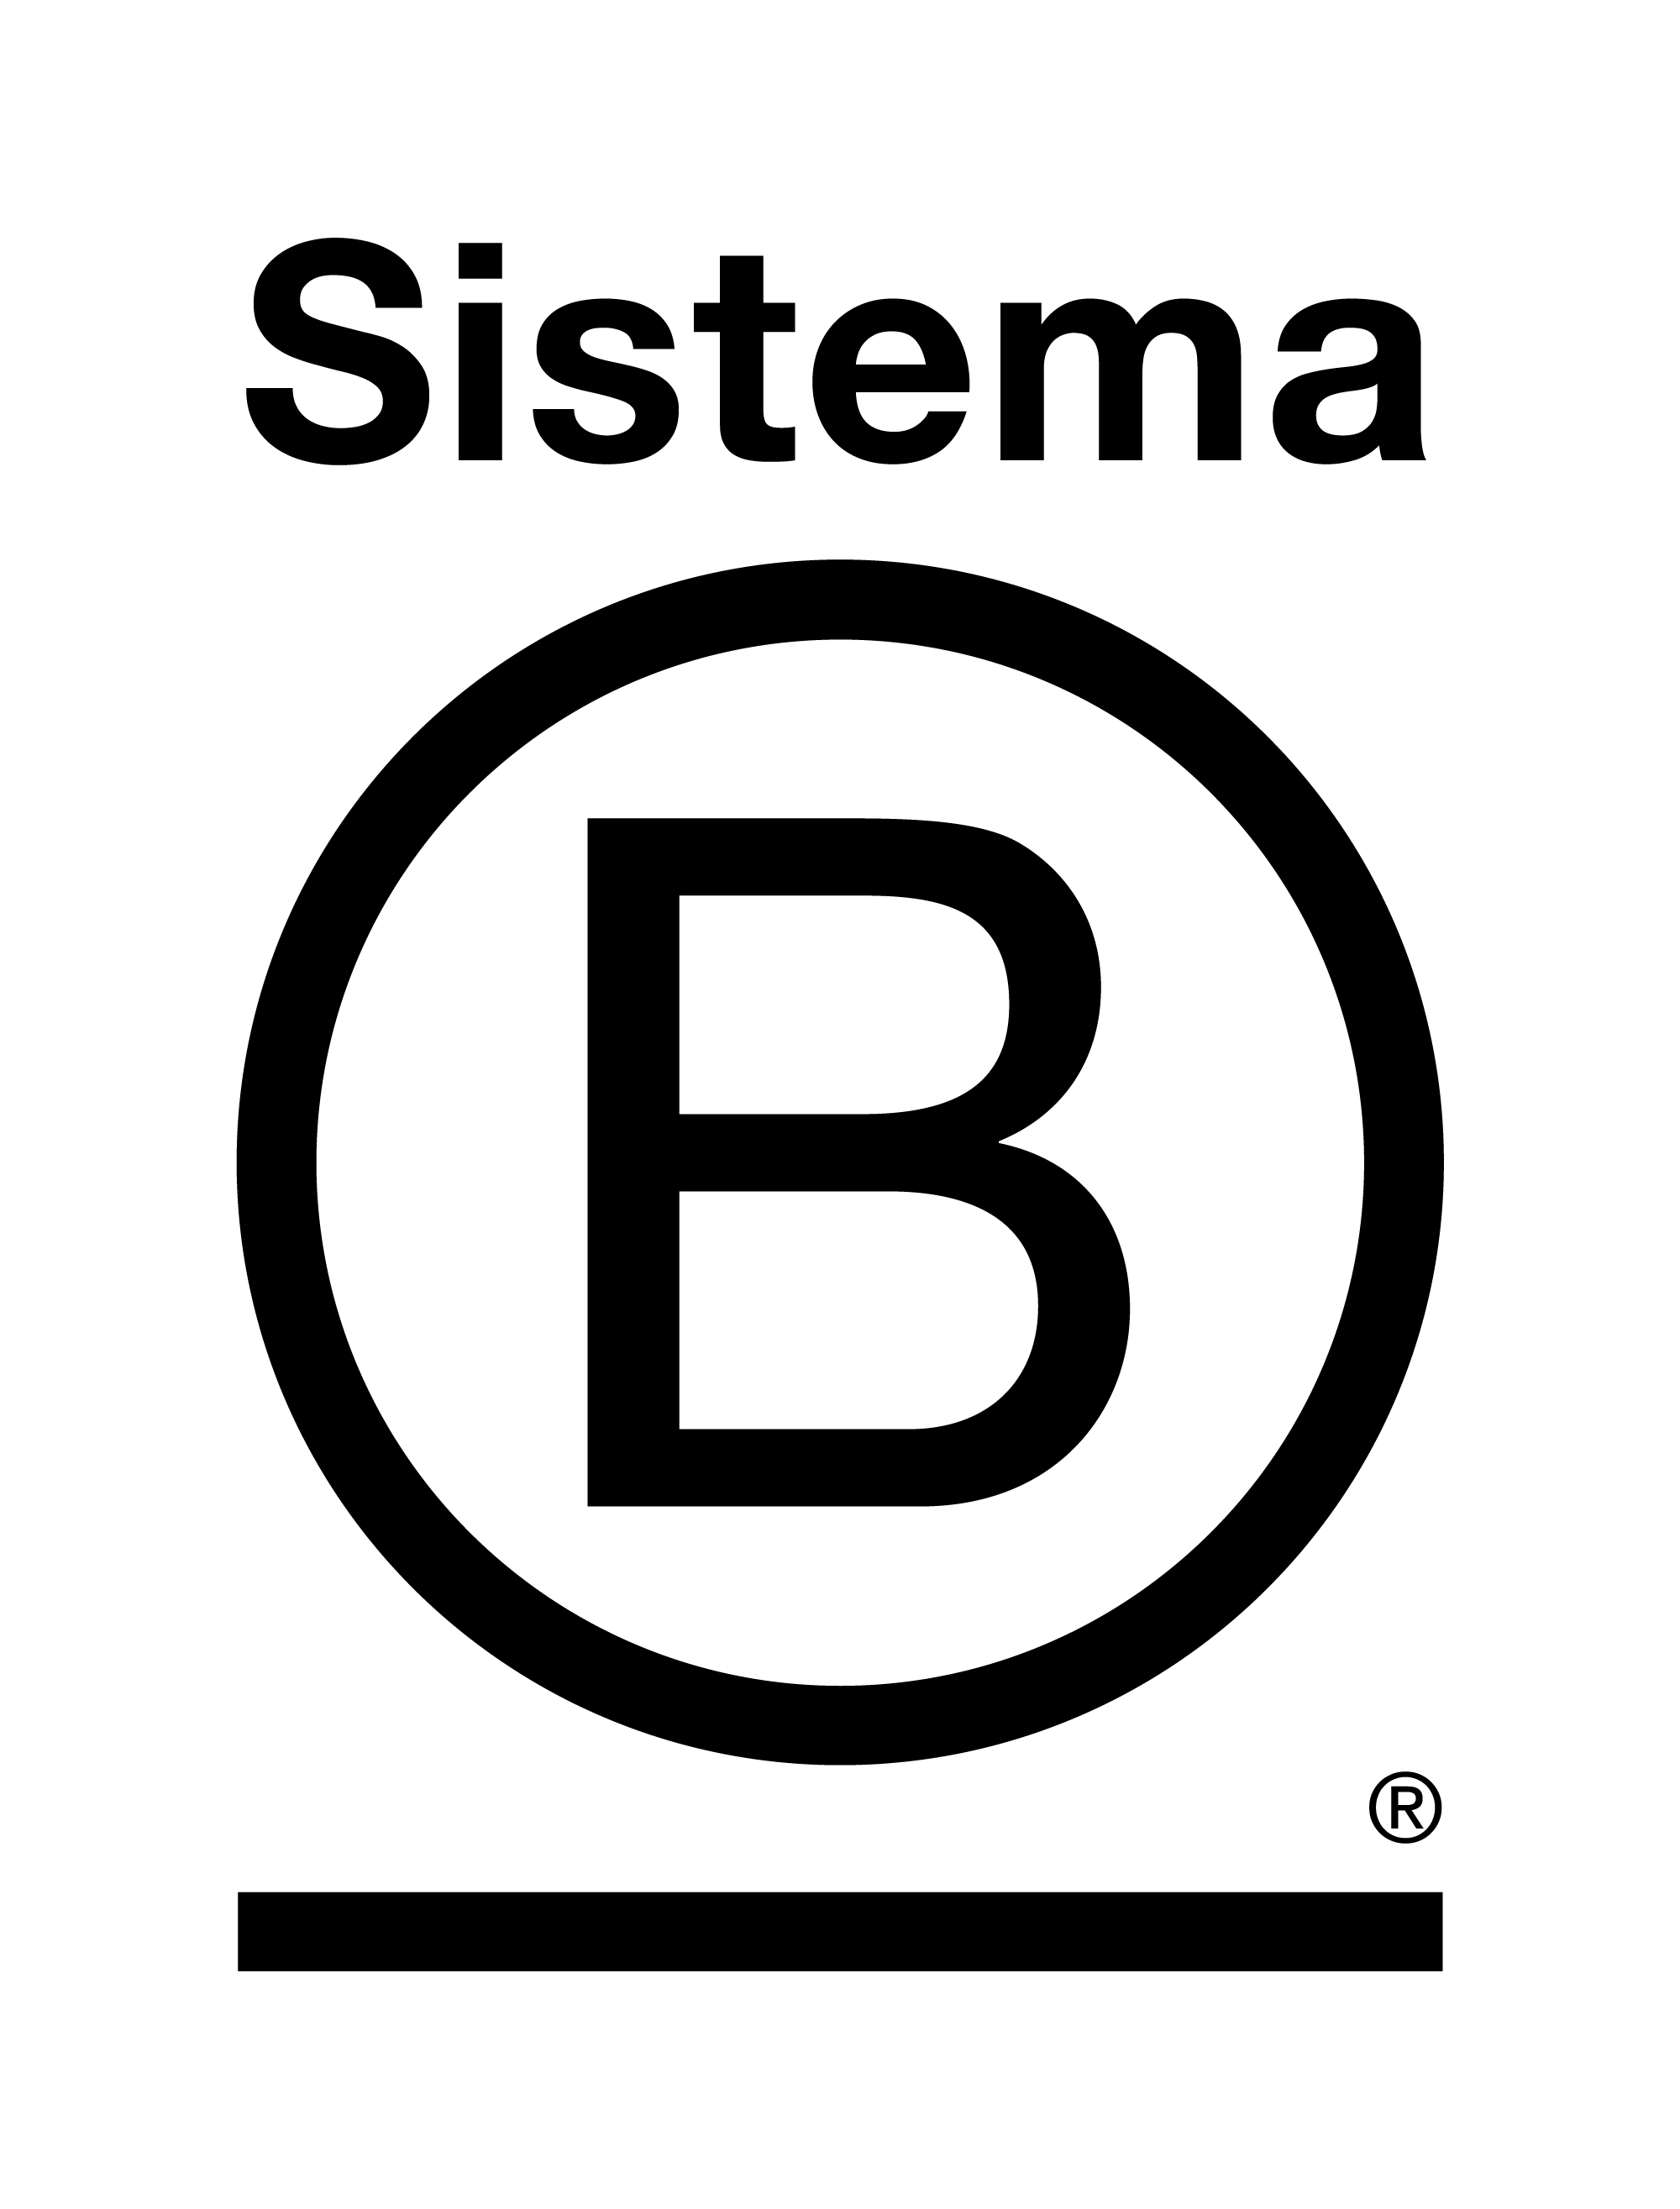 Logo de Sistema B